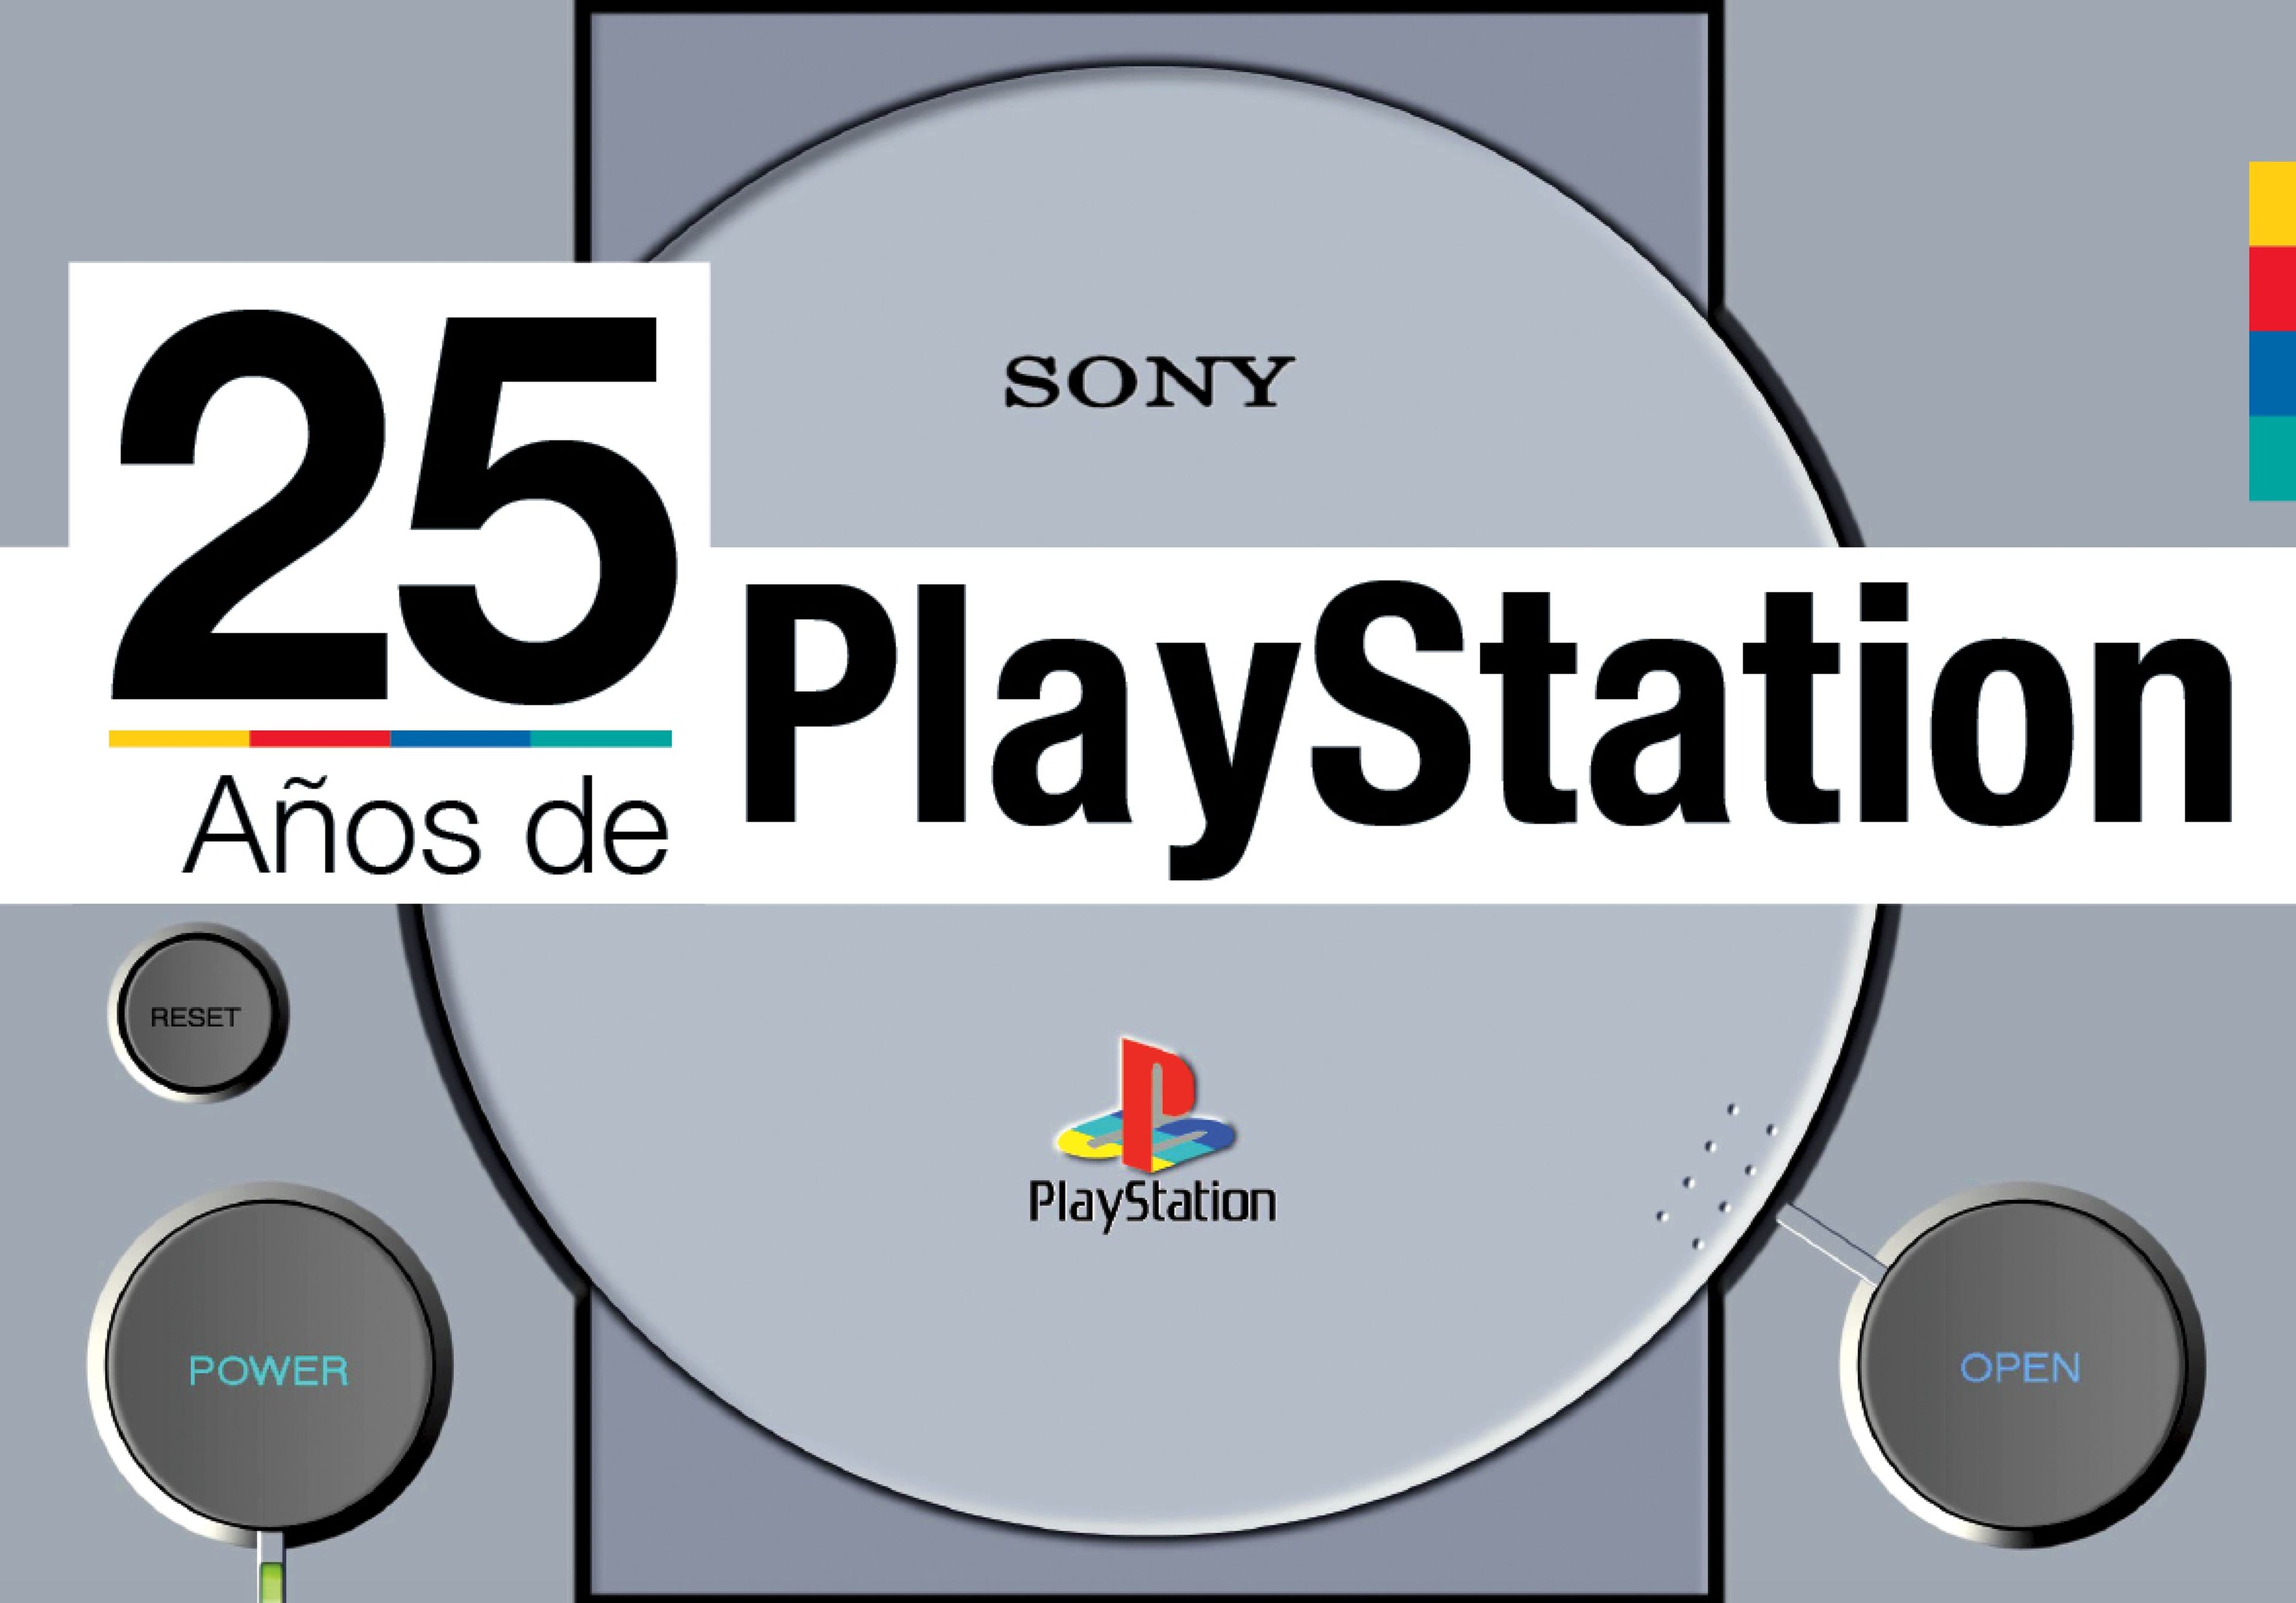 25 años de PlayStation en España